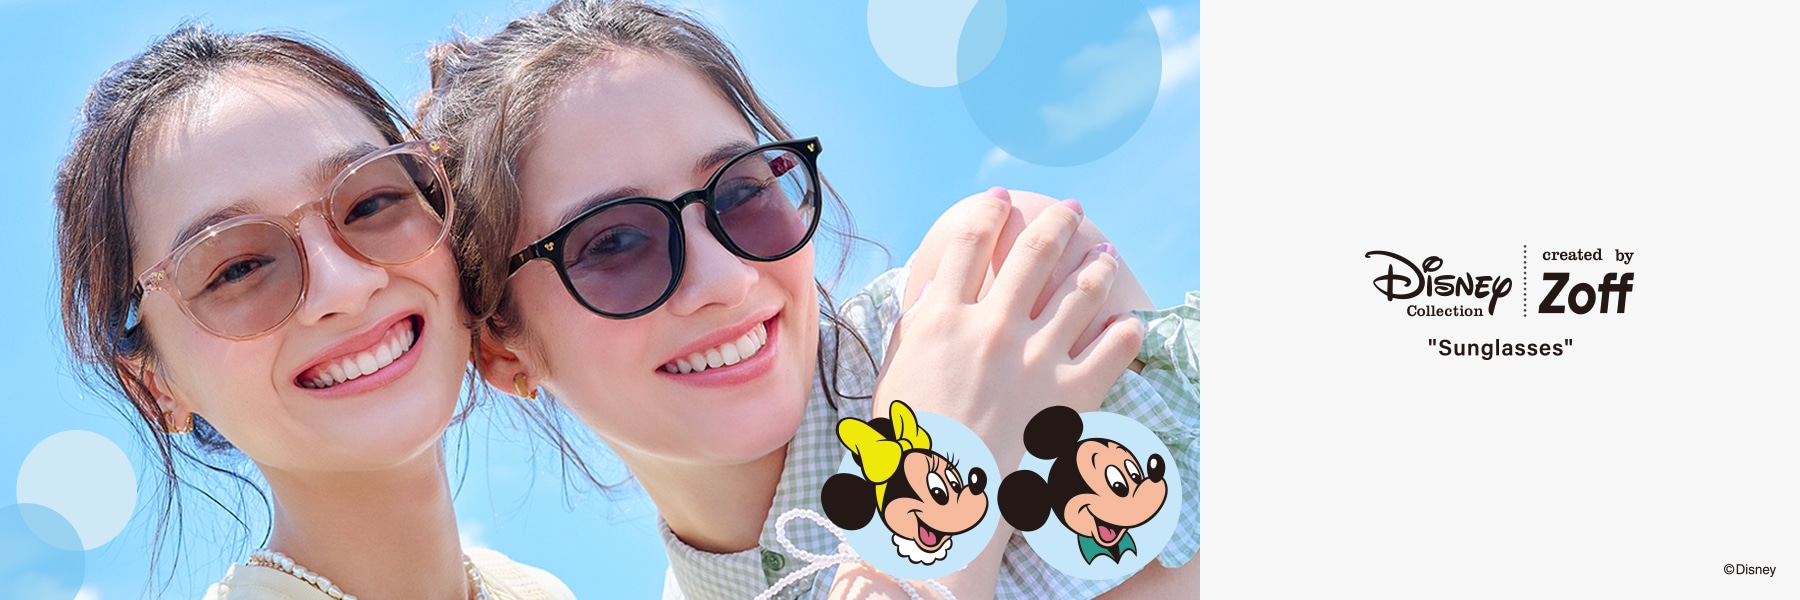 Disney Collection Sunglasses（ディズニー・コレクション・サングラス）